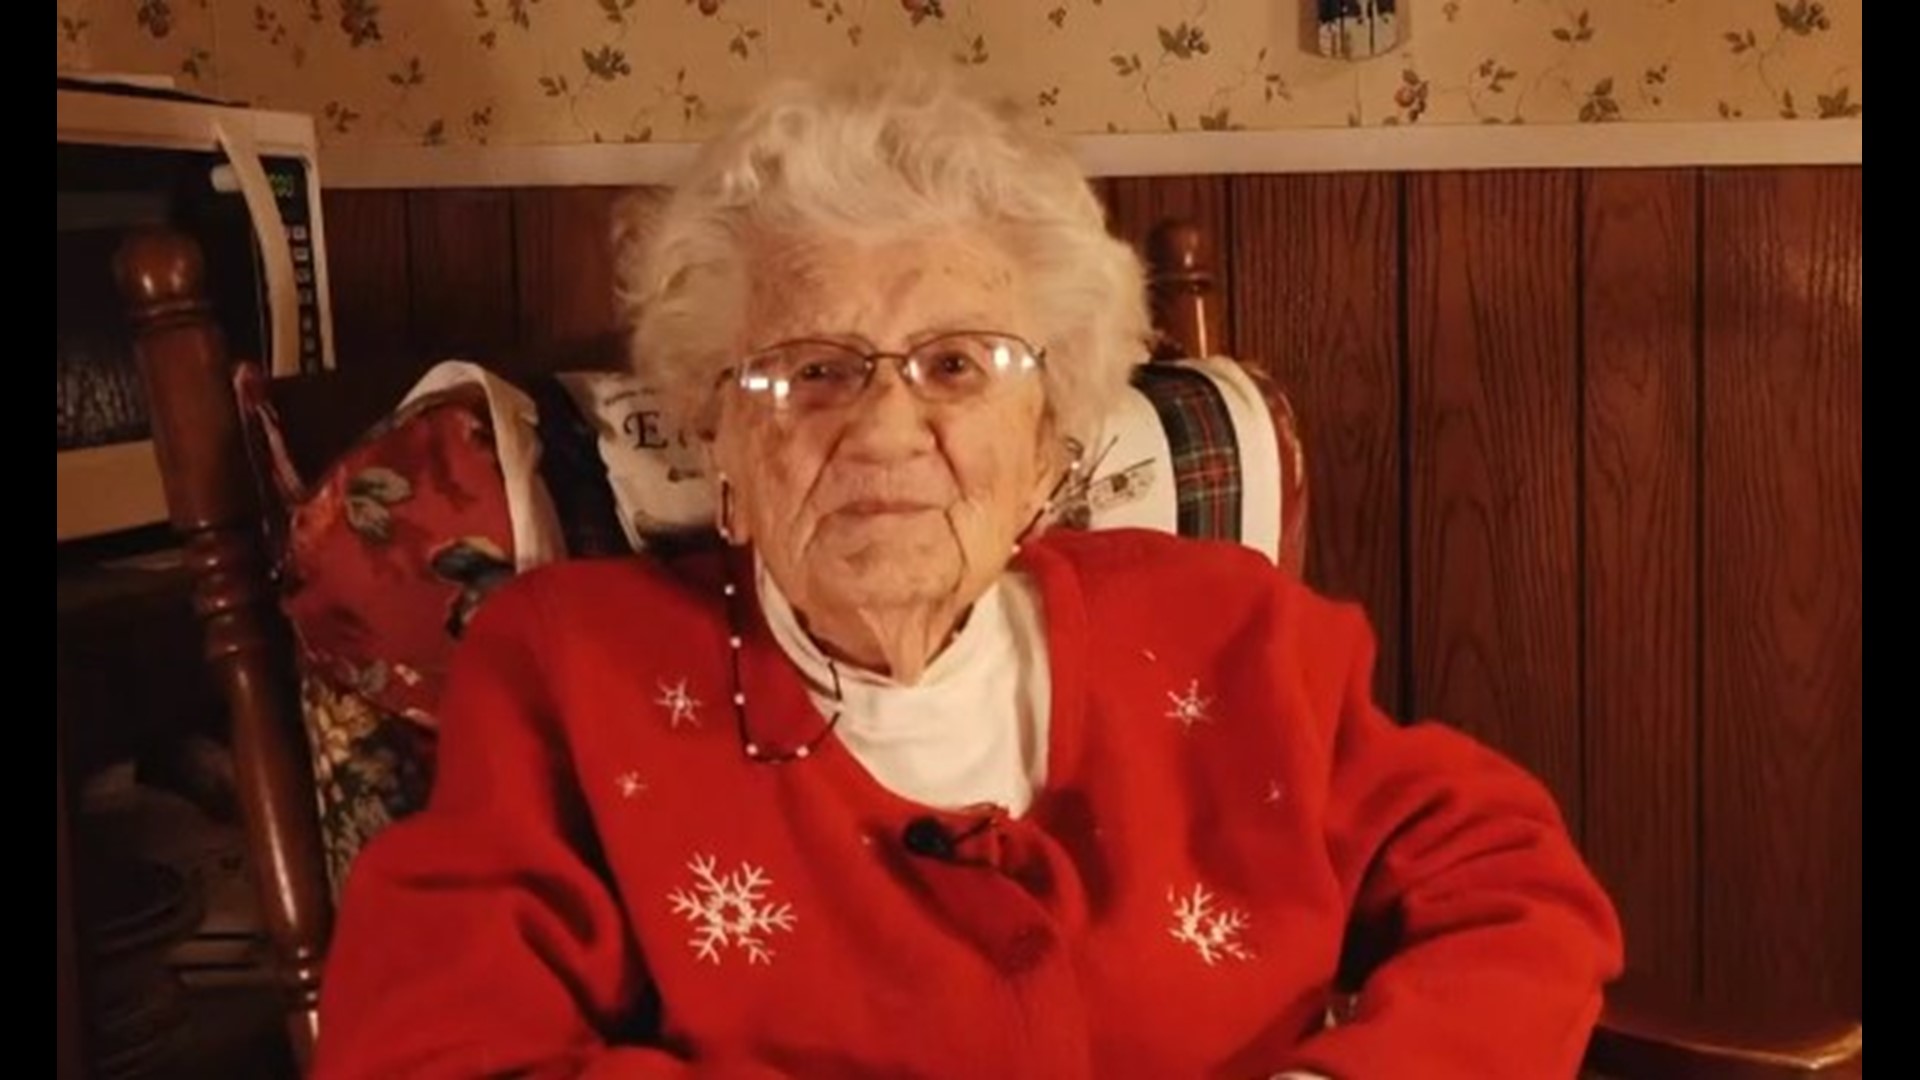 Dottie Brown, knitting since 1920